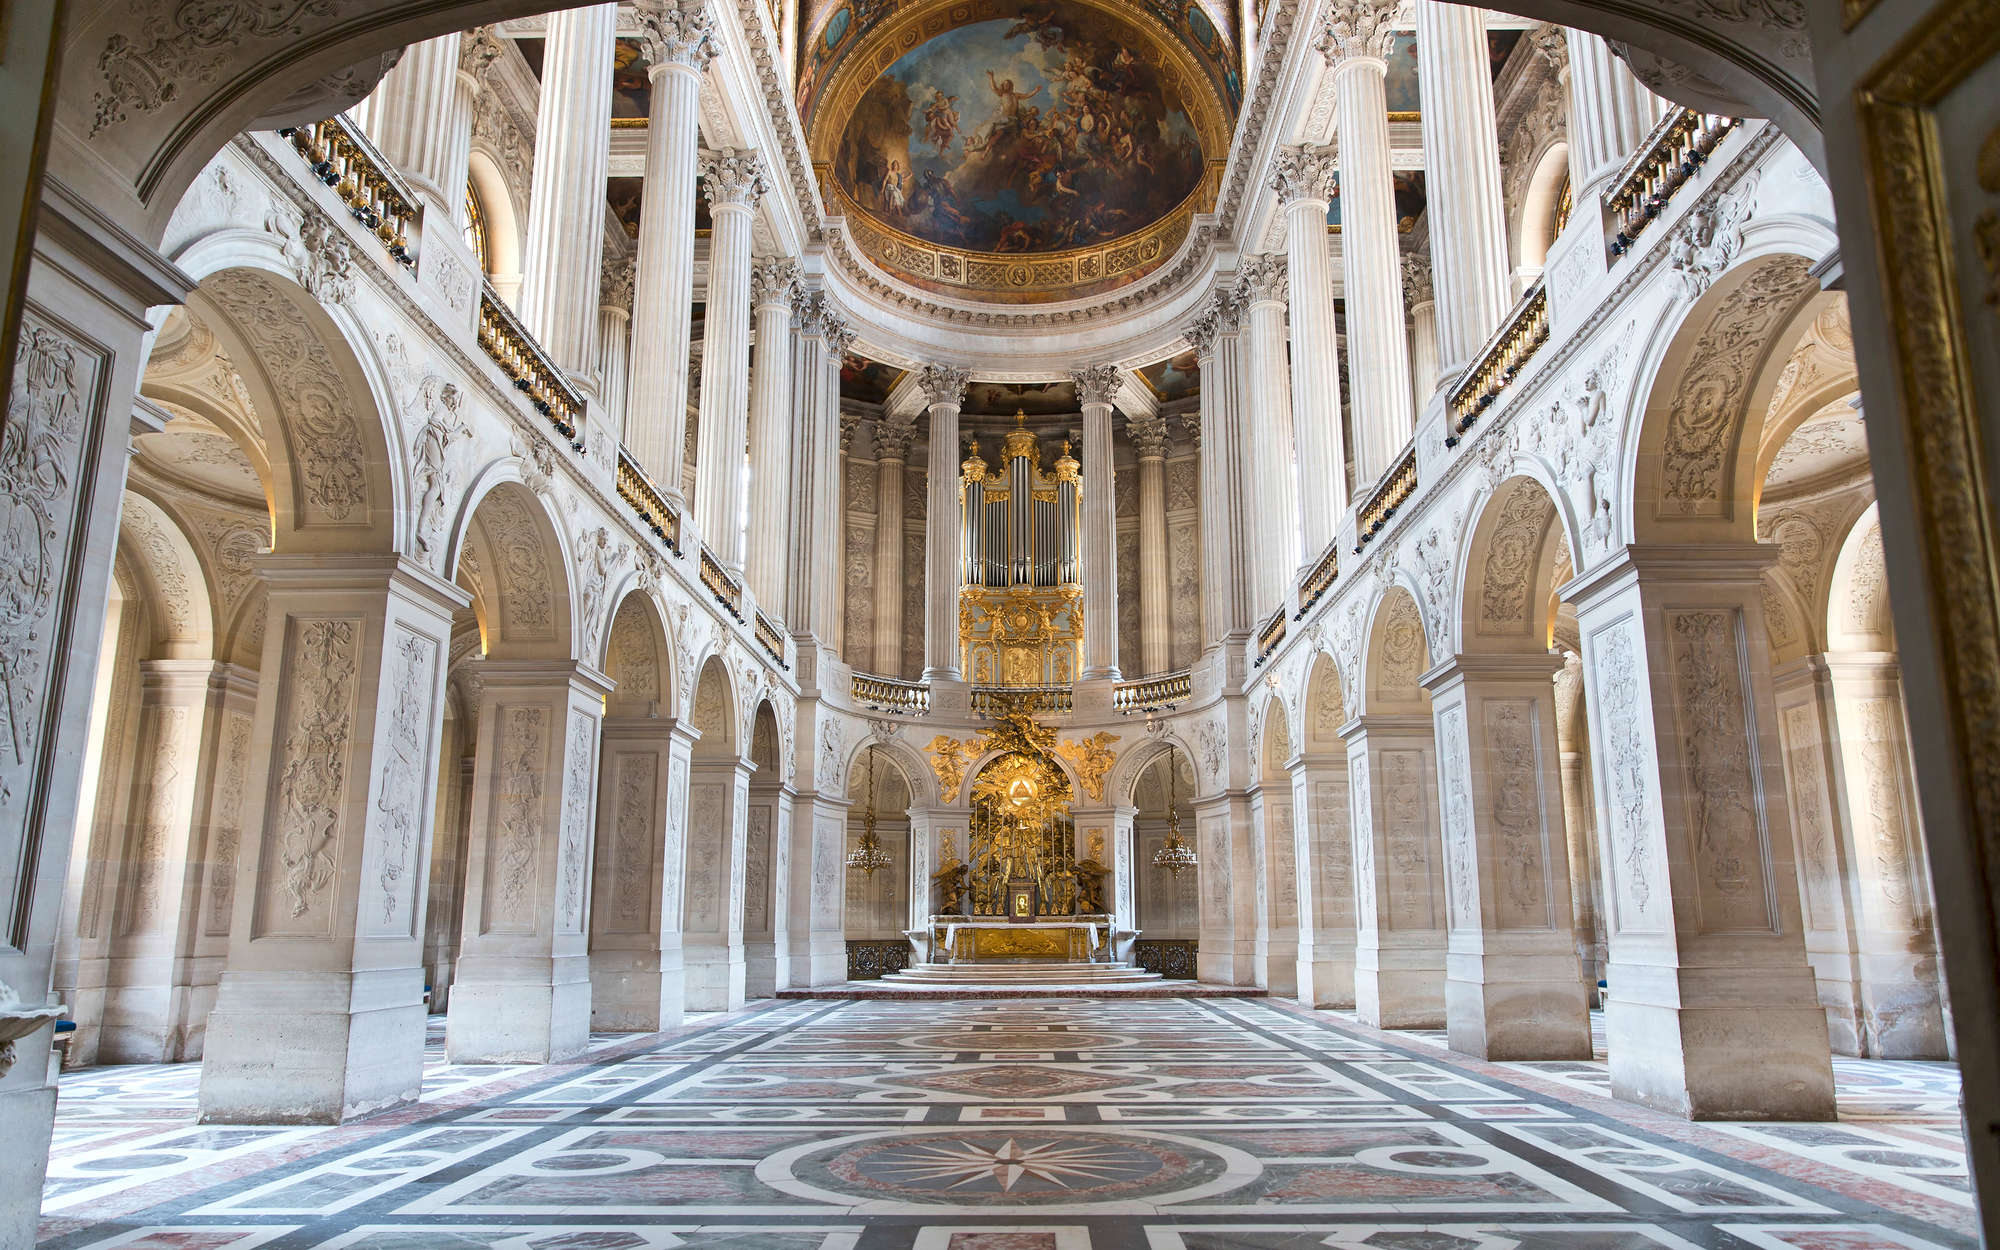             Papel pintable Barroco Palacio de Versalles - tejido no tejido liso de alta calidad
        